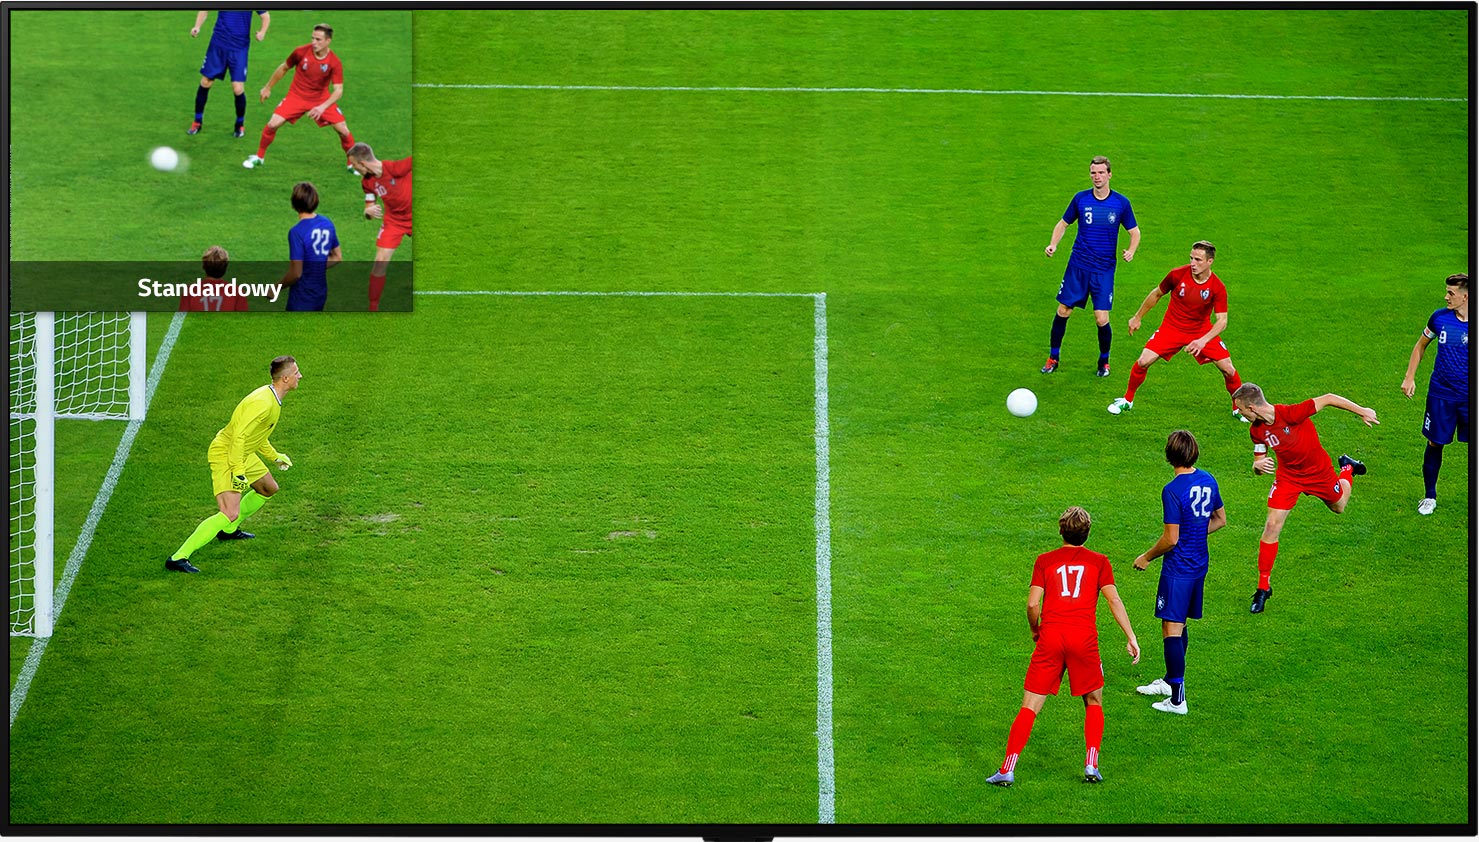 Ekran telewizora z obrazem w obrazie pozwalający porównać jakość pikseli na ekranie LCD/LED i OLED na przykładzie meczu piłkarskiego